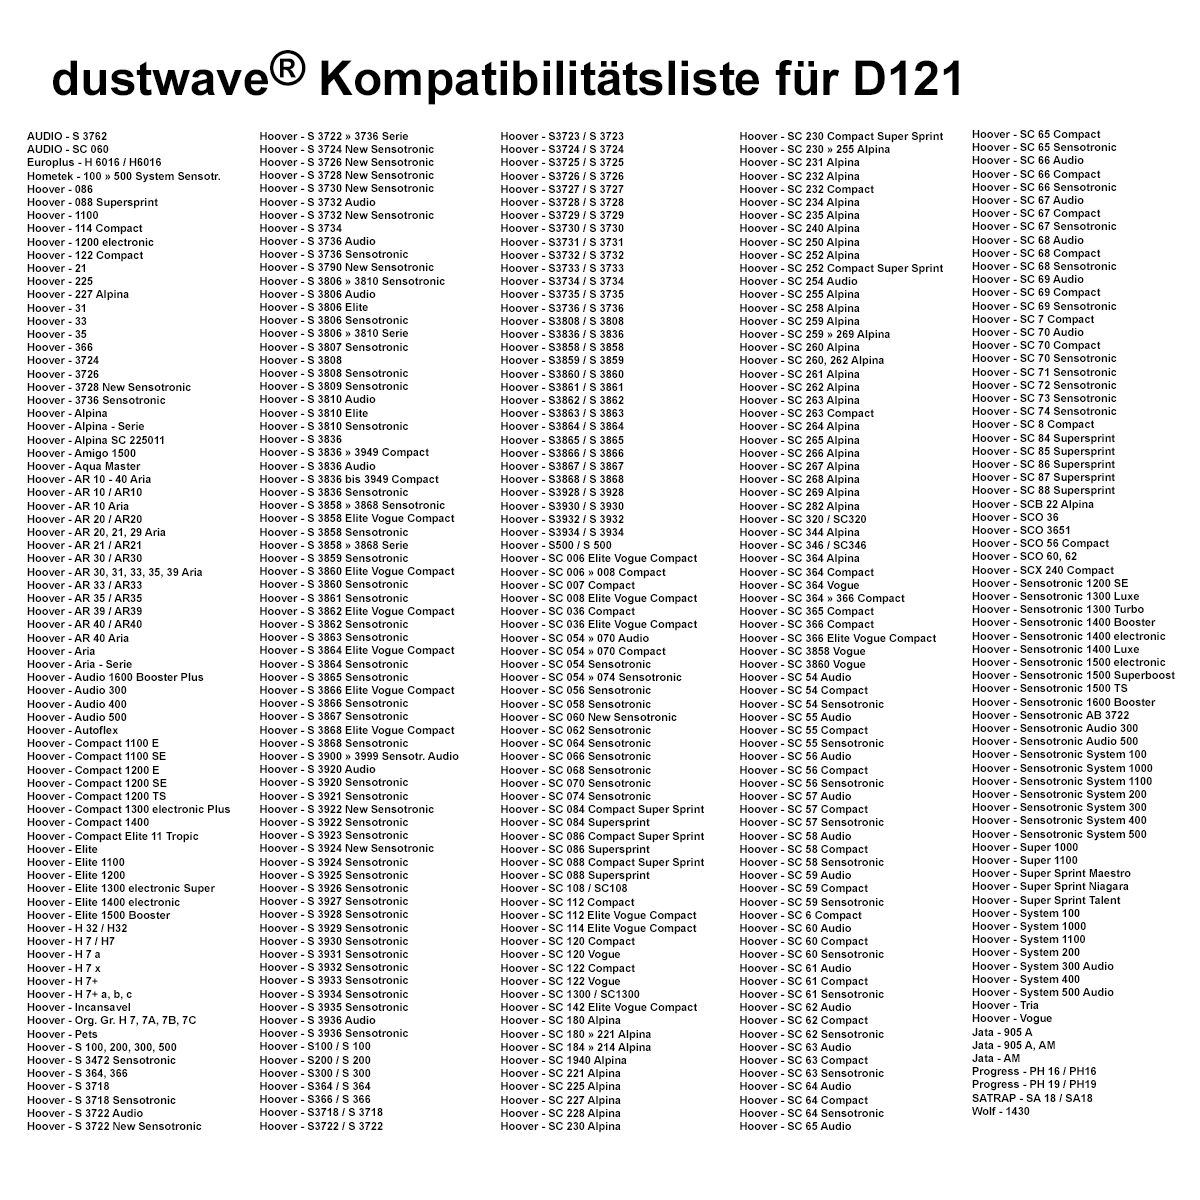 Dustwave® 10 Staubsaugerbeutel für Hoover Sensotronic 1500 electronic / Superboost / TS - hocheffizient, mehrlagiges Mikrovlies mit Hygieneverschluss - Made in Germany